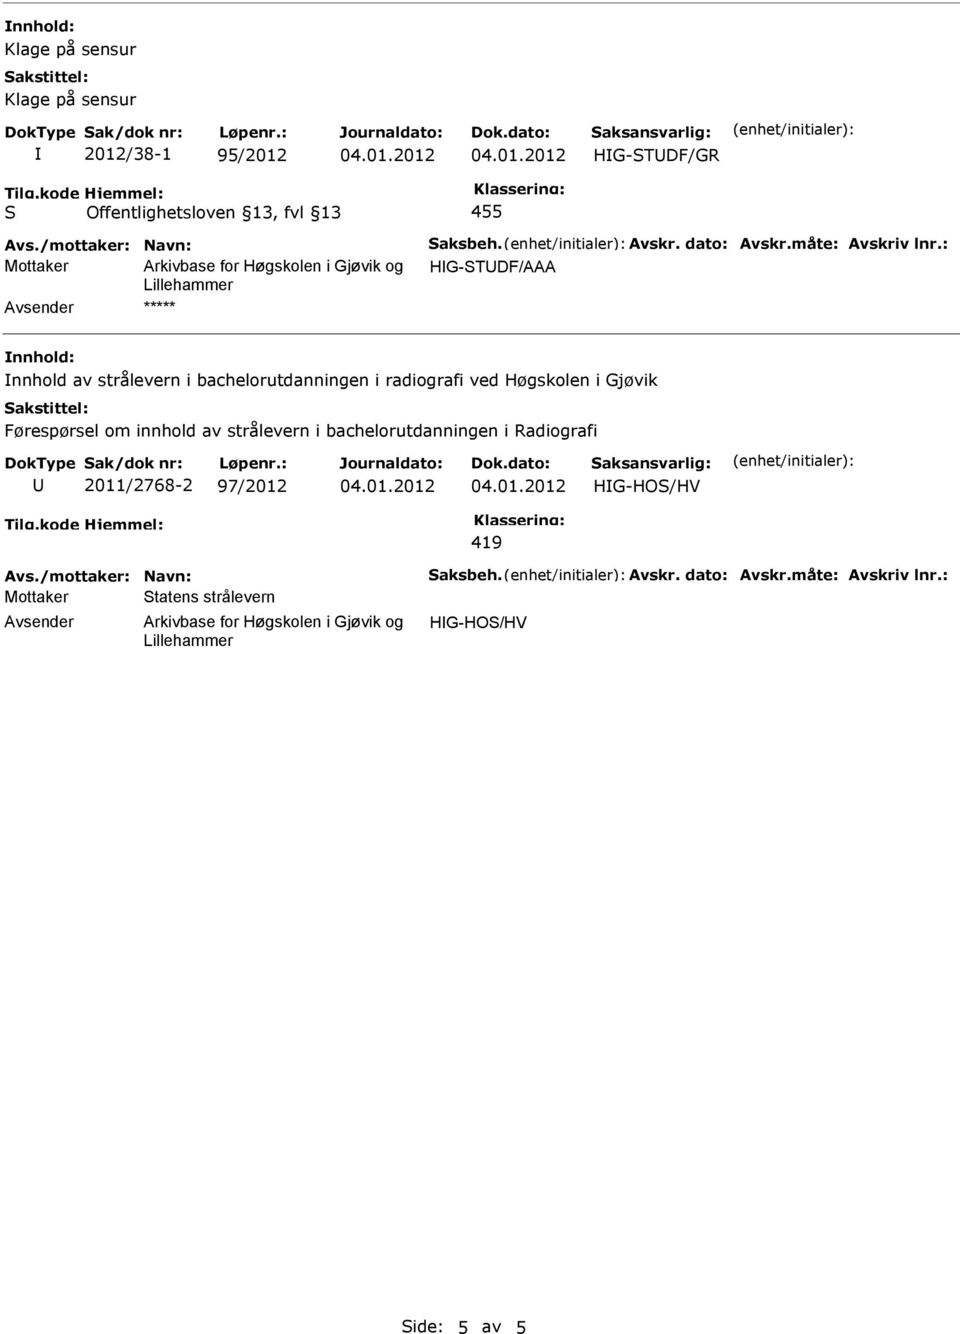 Høgskolen i Gjøvik Førespørsel om innhold av strålevern i bachelorutdanningen i Radiografi U 2011/2768-2 97/2012 HG-HO/HV 419